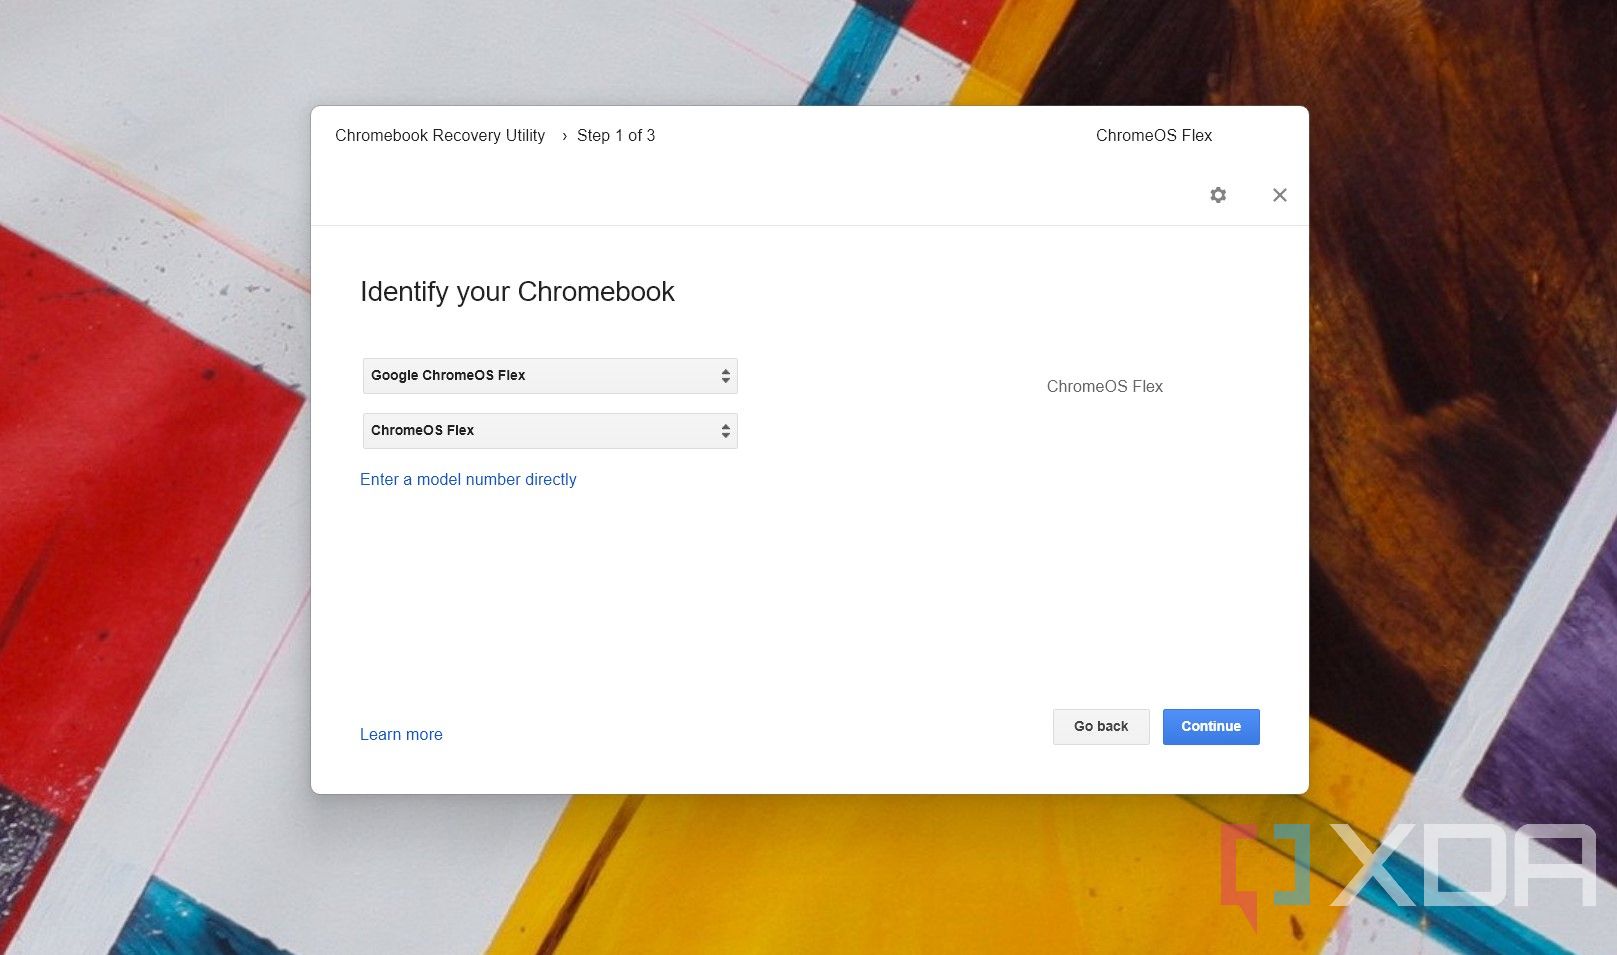 Sélection de ChromeOS Flex dans l'utilitaire de récupération Chromebook